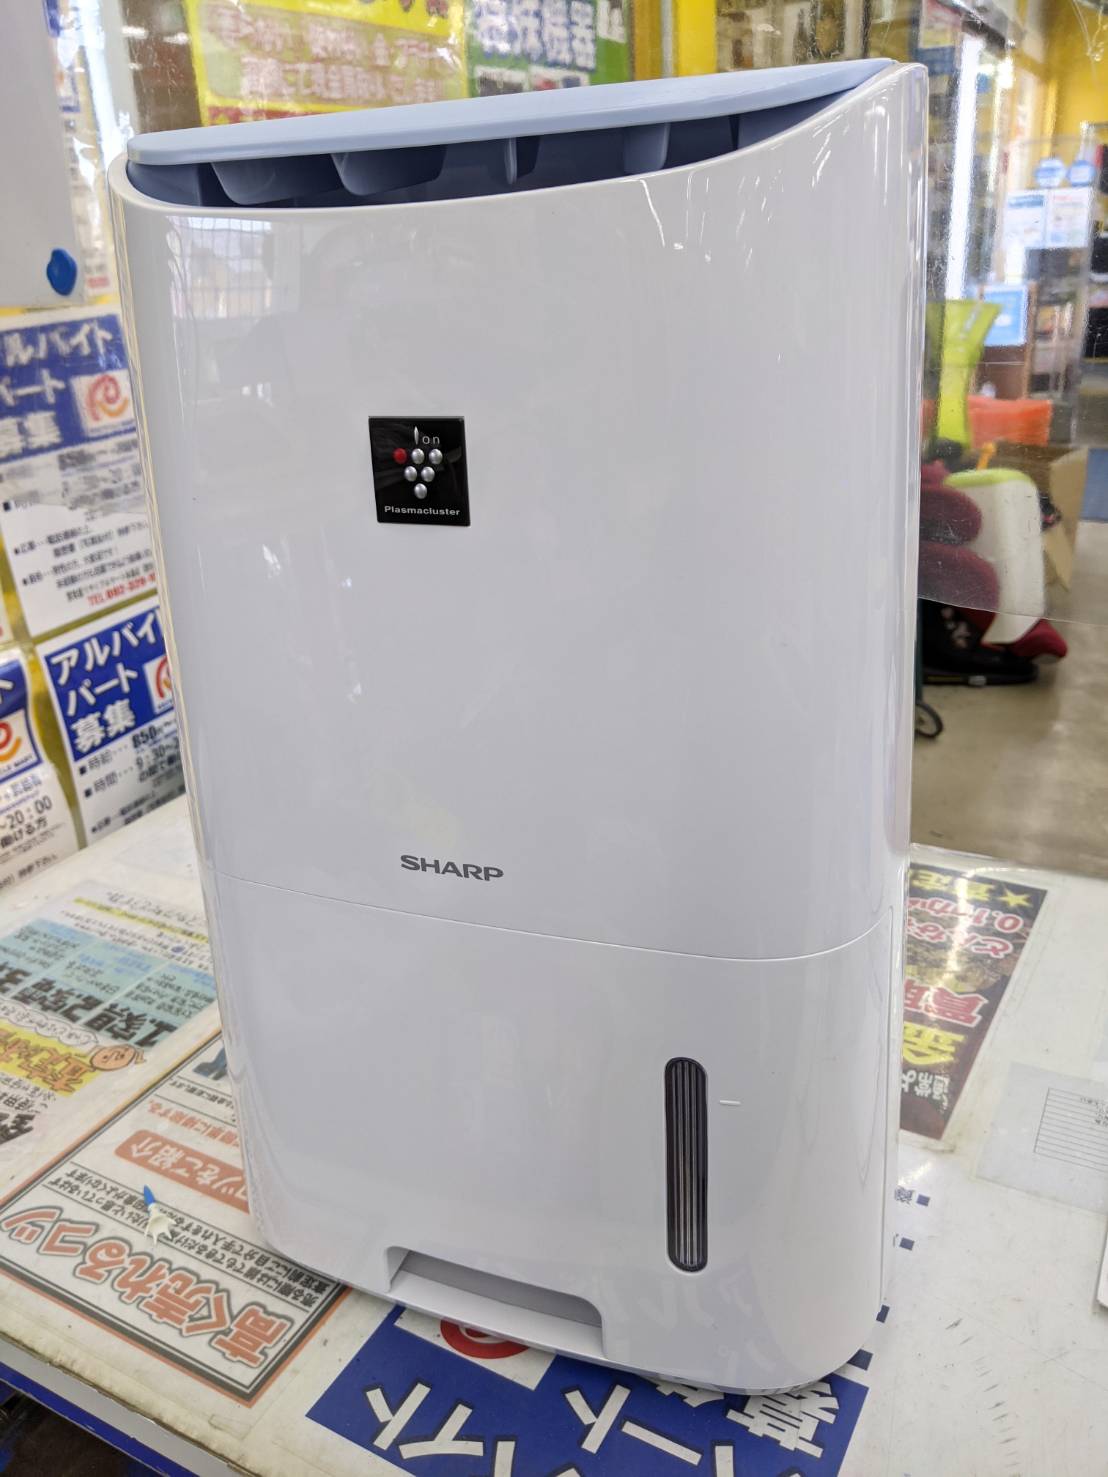 SHARP 除湿機 CV-H71 プラズマクラスター7000 2018年式 衣類乾燥機 をお買取致しました☆ - リサイクルマートは現在冷蔵庫の買取、家具の買取強化中です！お気軽にお問い合わせください。